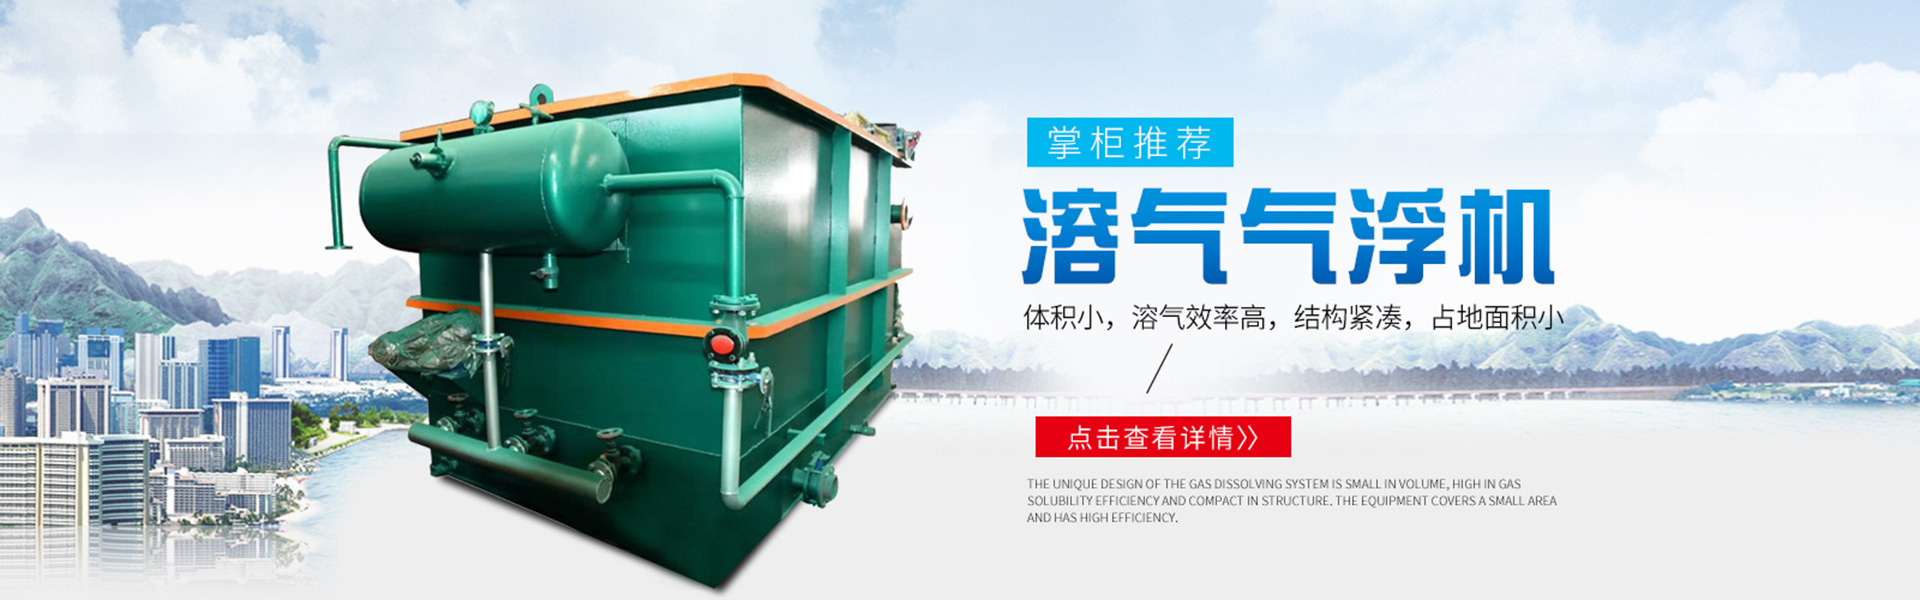 气浮机-一体化污水处理设备-火狐体育官方网站